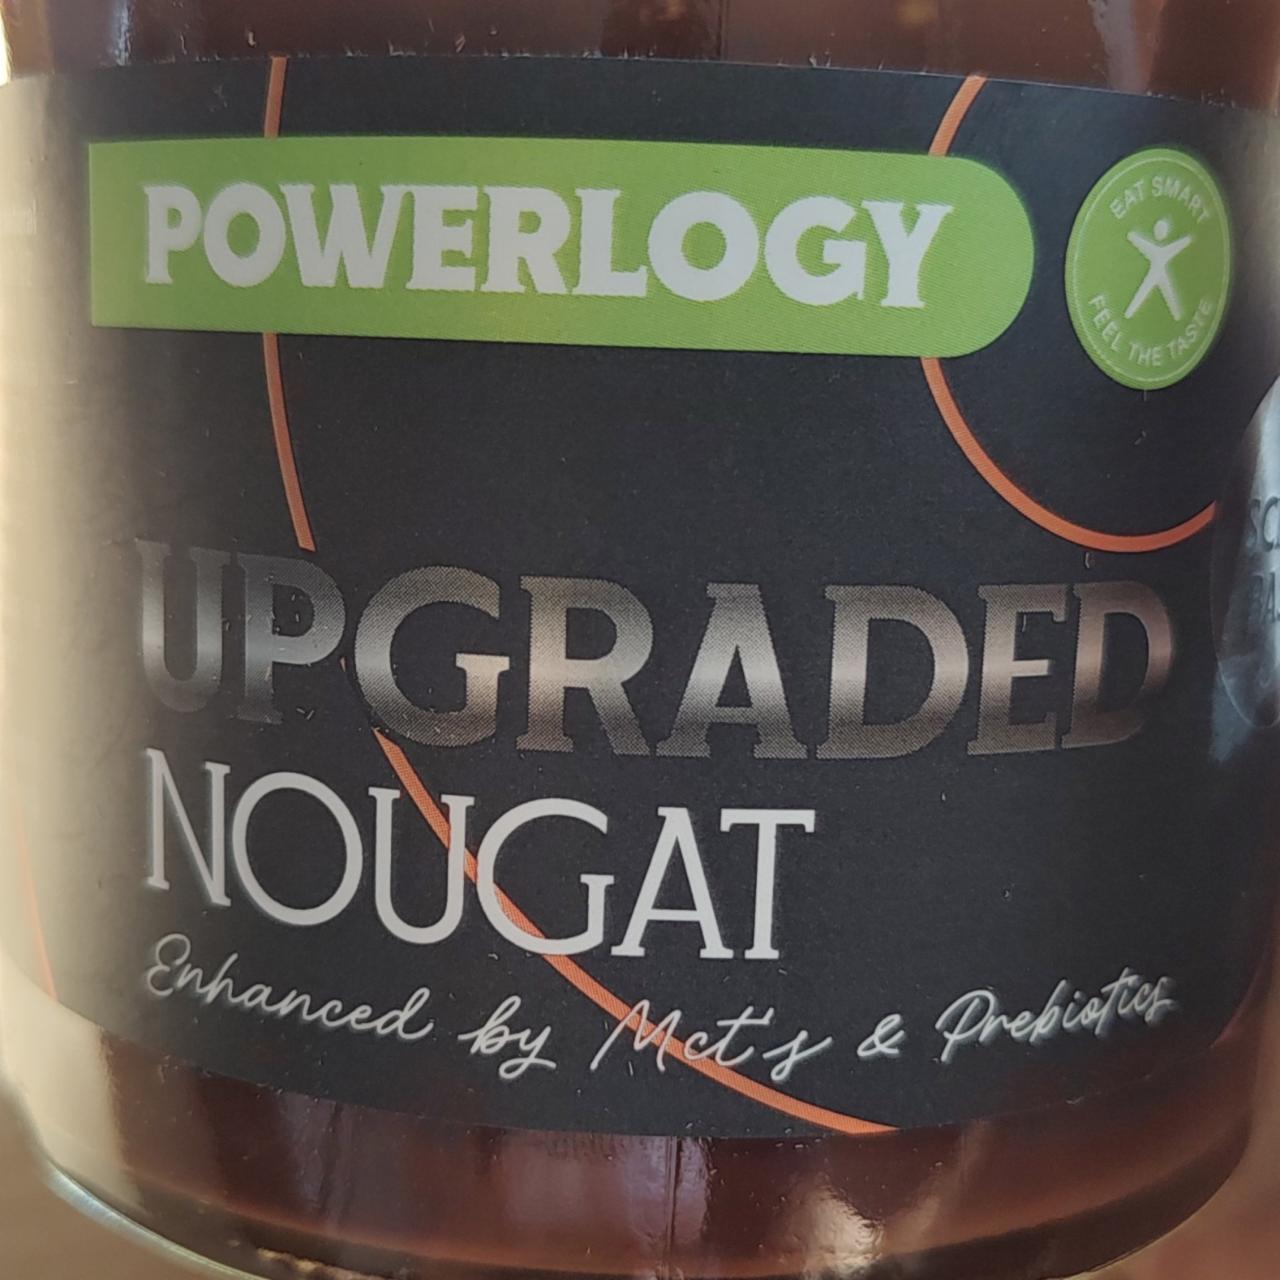 Fotografie - Upgraded Nougat Powerlogy